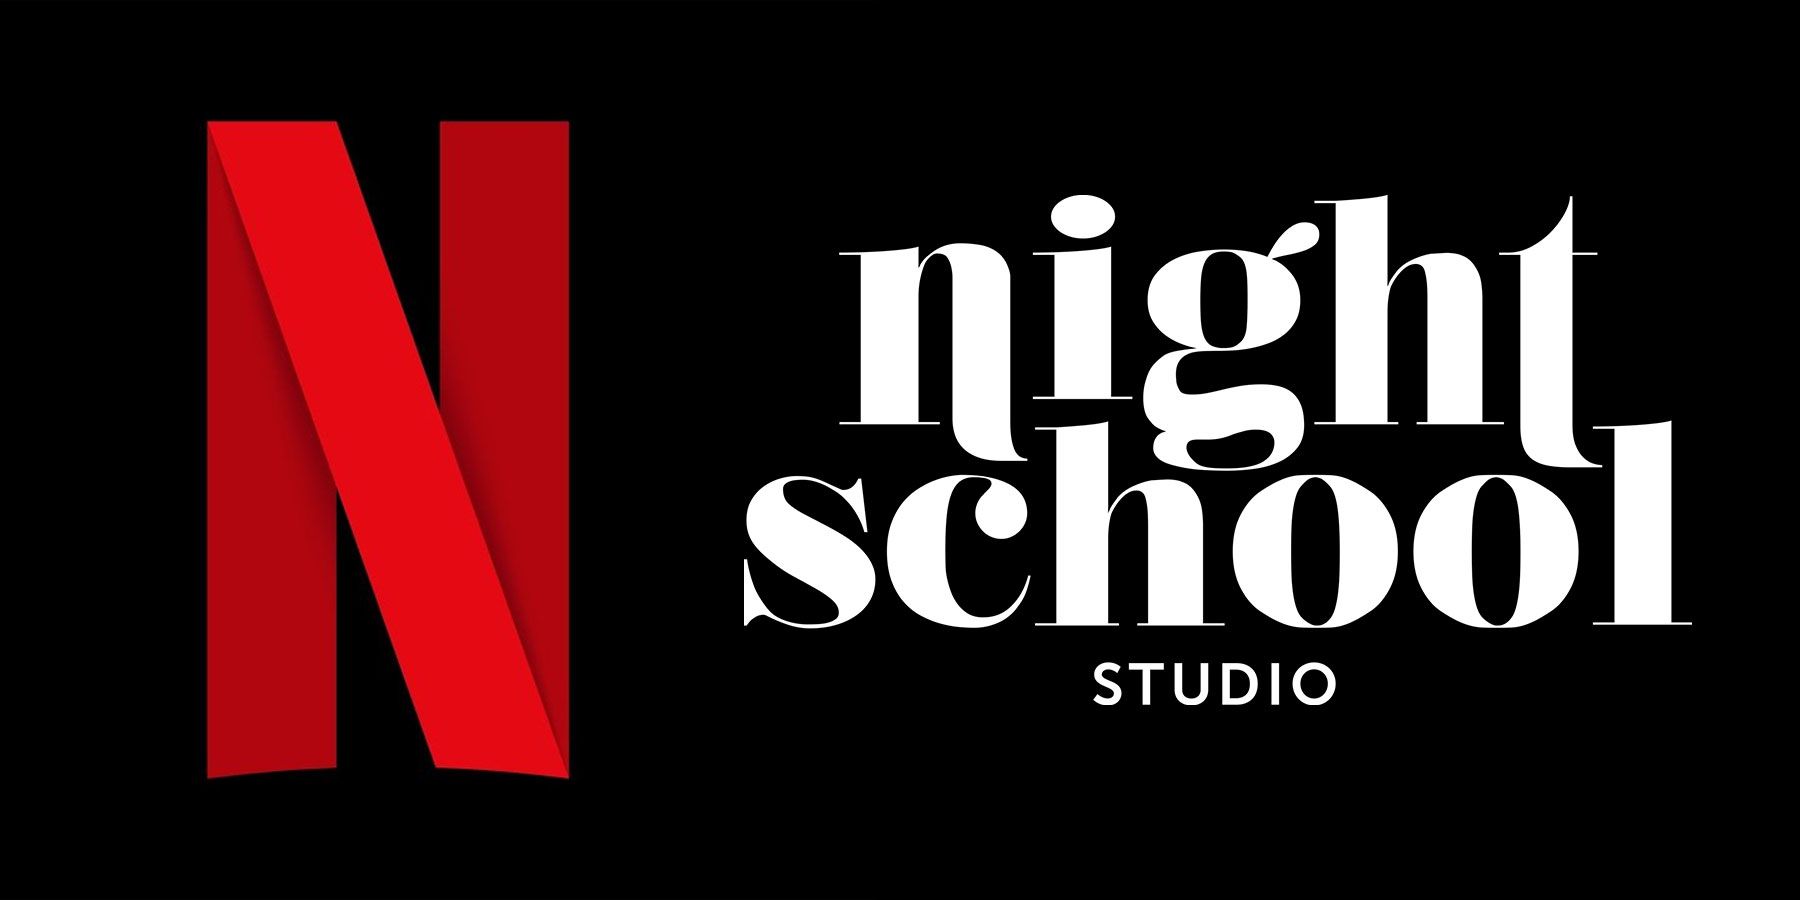 Akvizice studia Night School od Netflixu je dobrým znamením pro jeho ambice v oblasti streamování